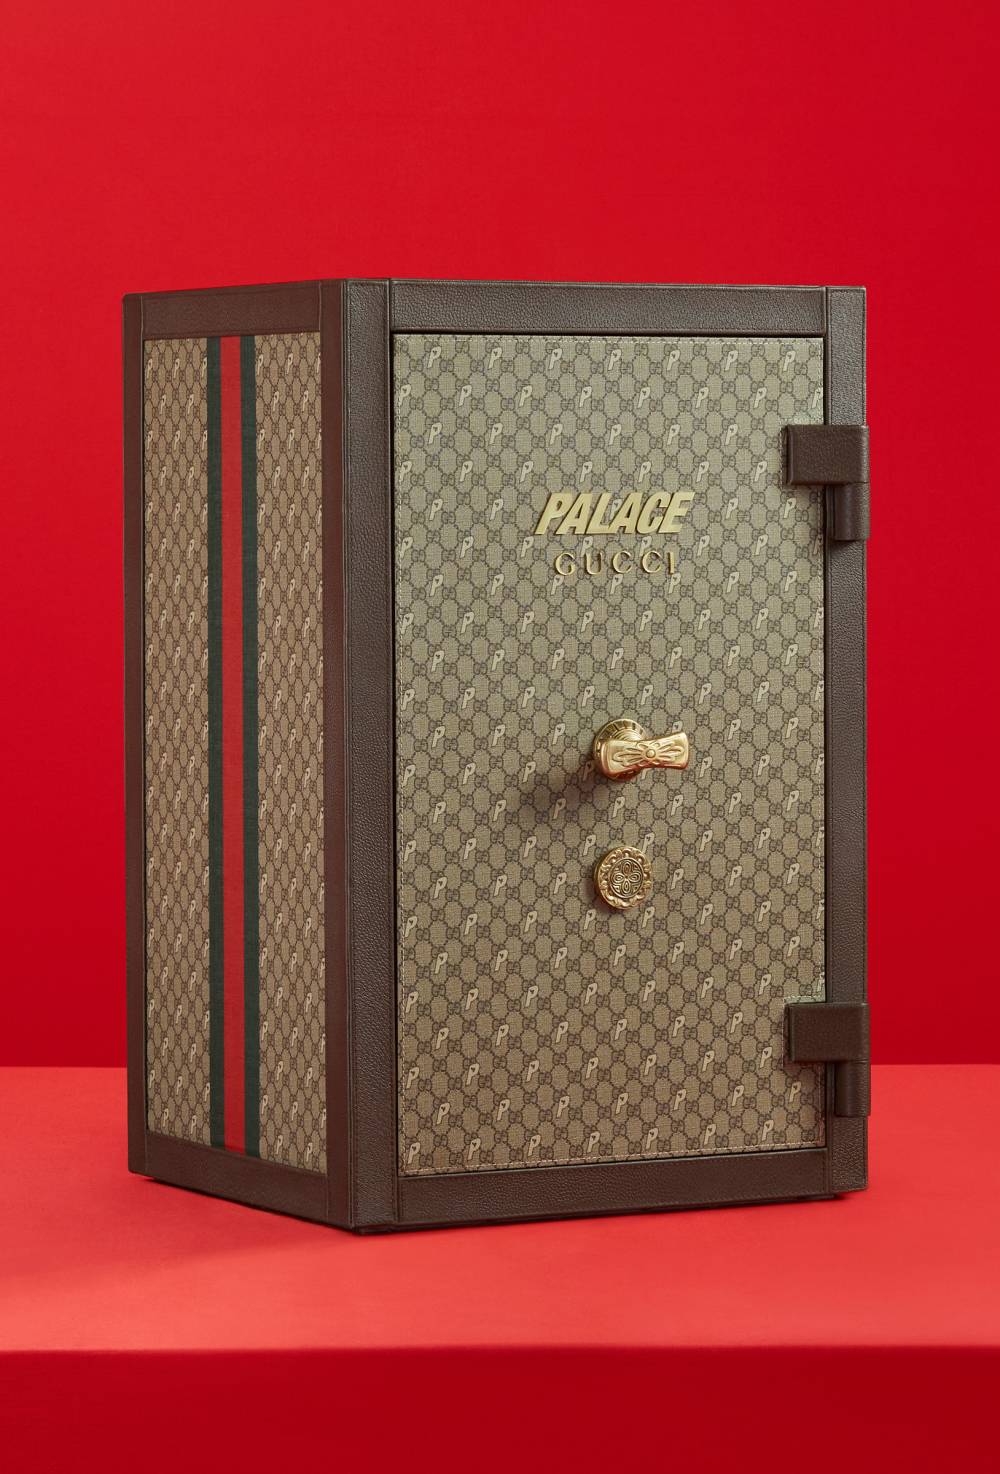 Palace Gucci GG-P Supreme Conforti safe box by Palace Gucci image #1